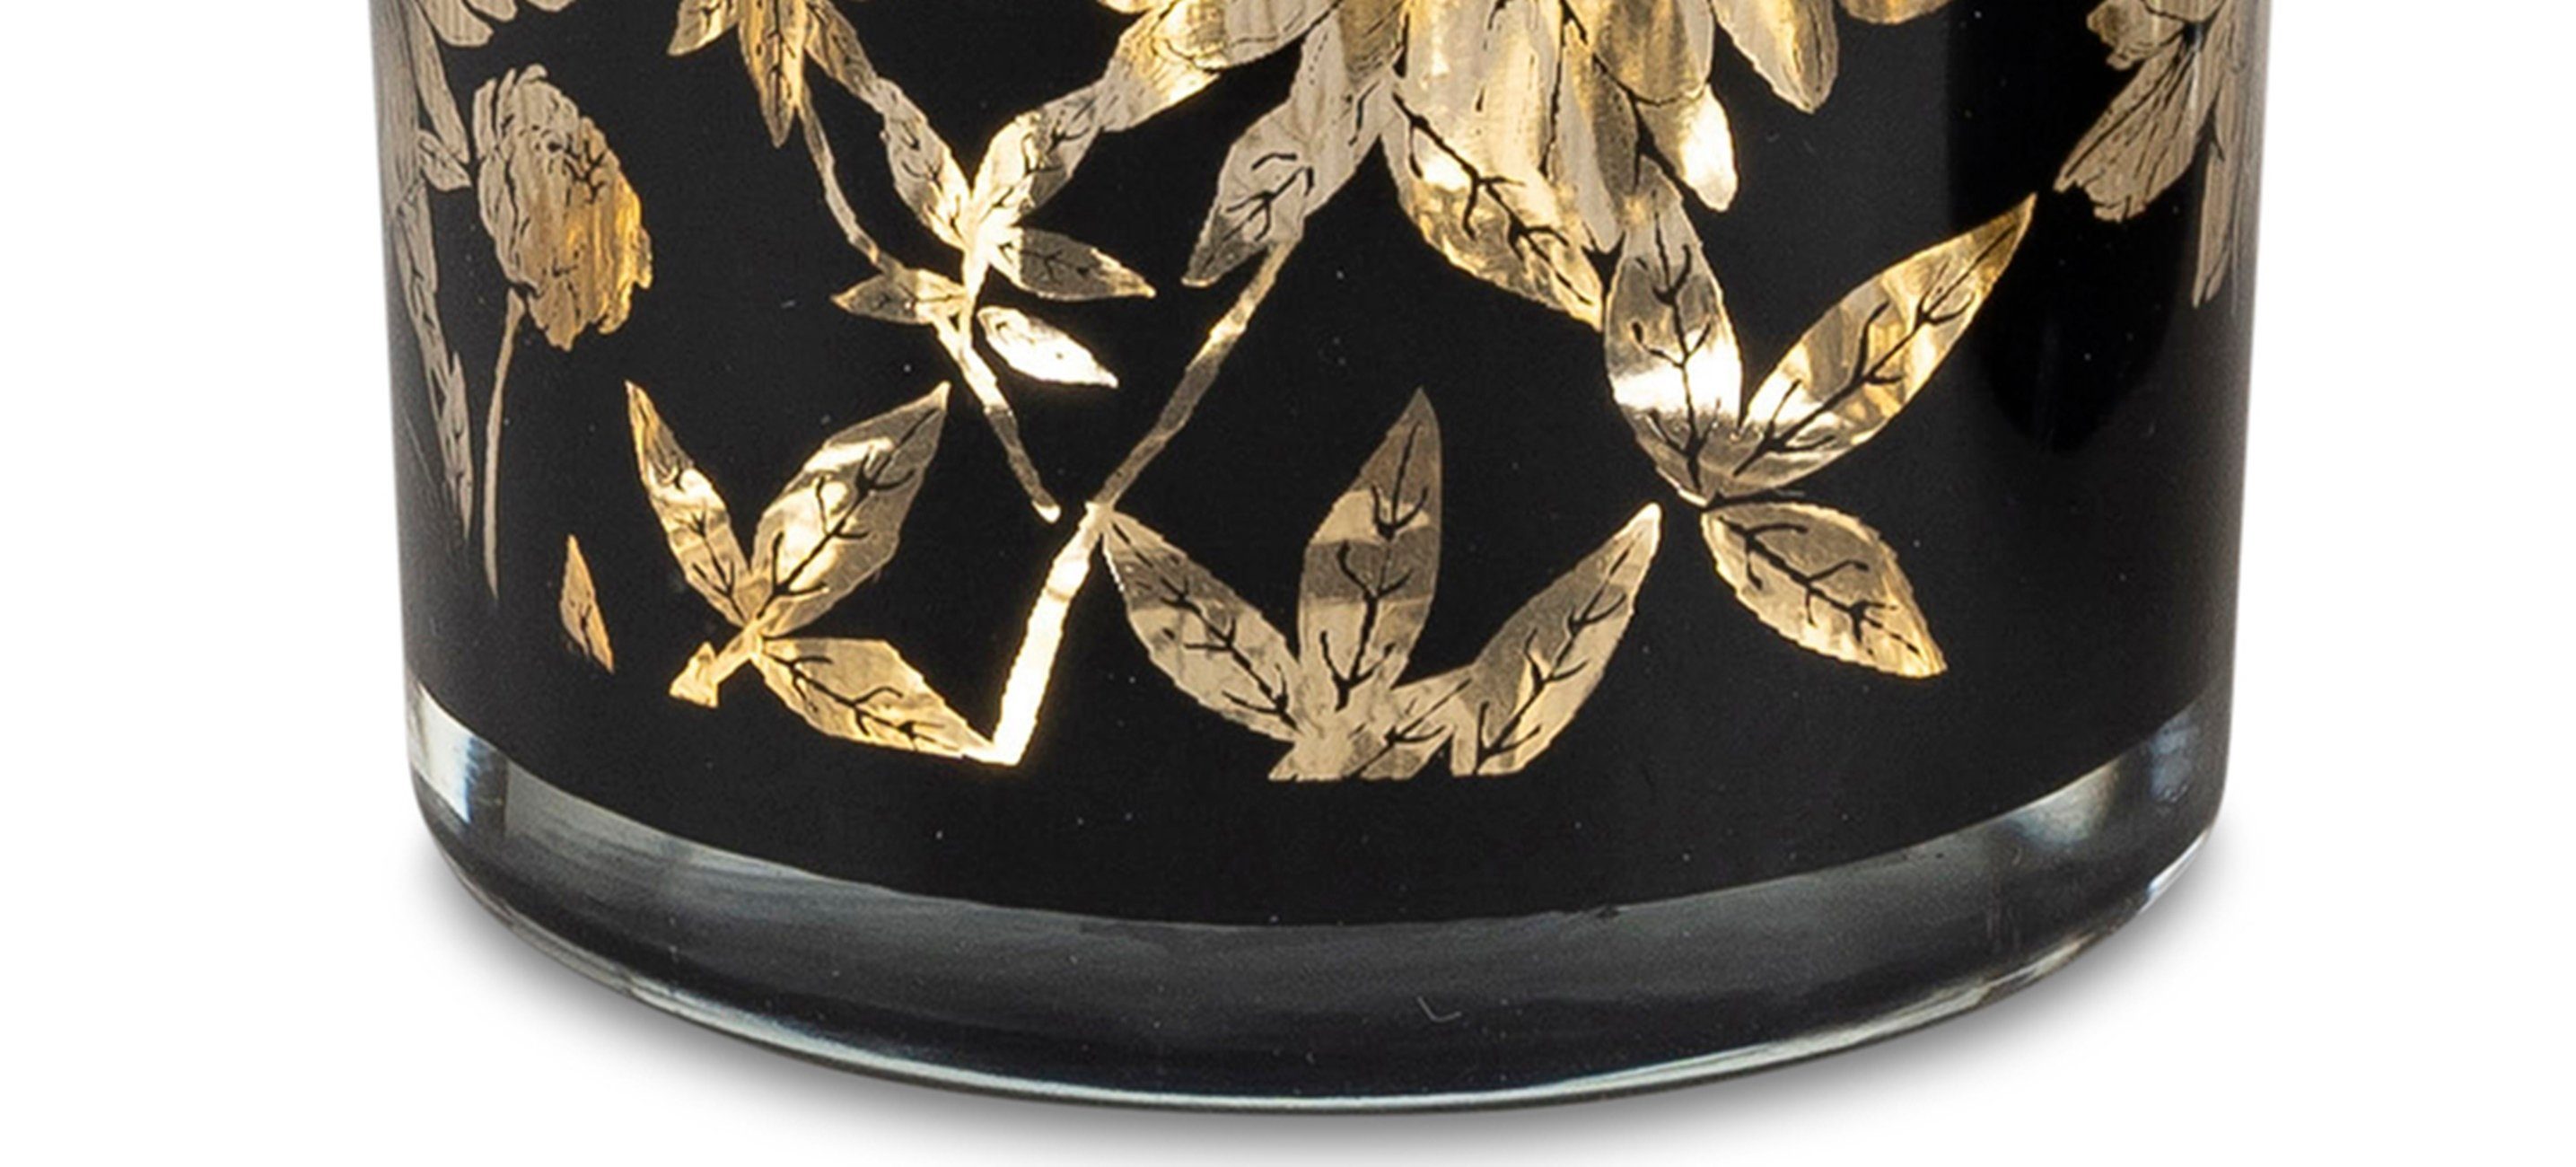 Windlicht gold Teelichthalter dekojohnson 8cm Windlichtglas schwarz